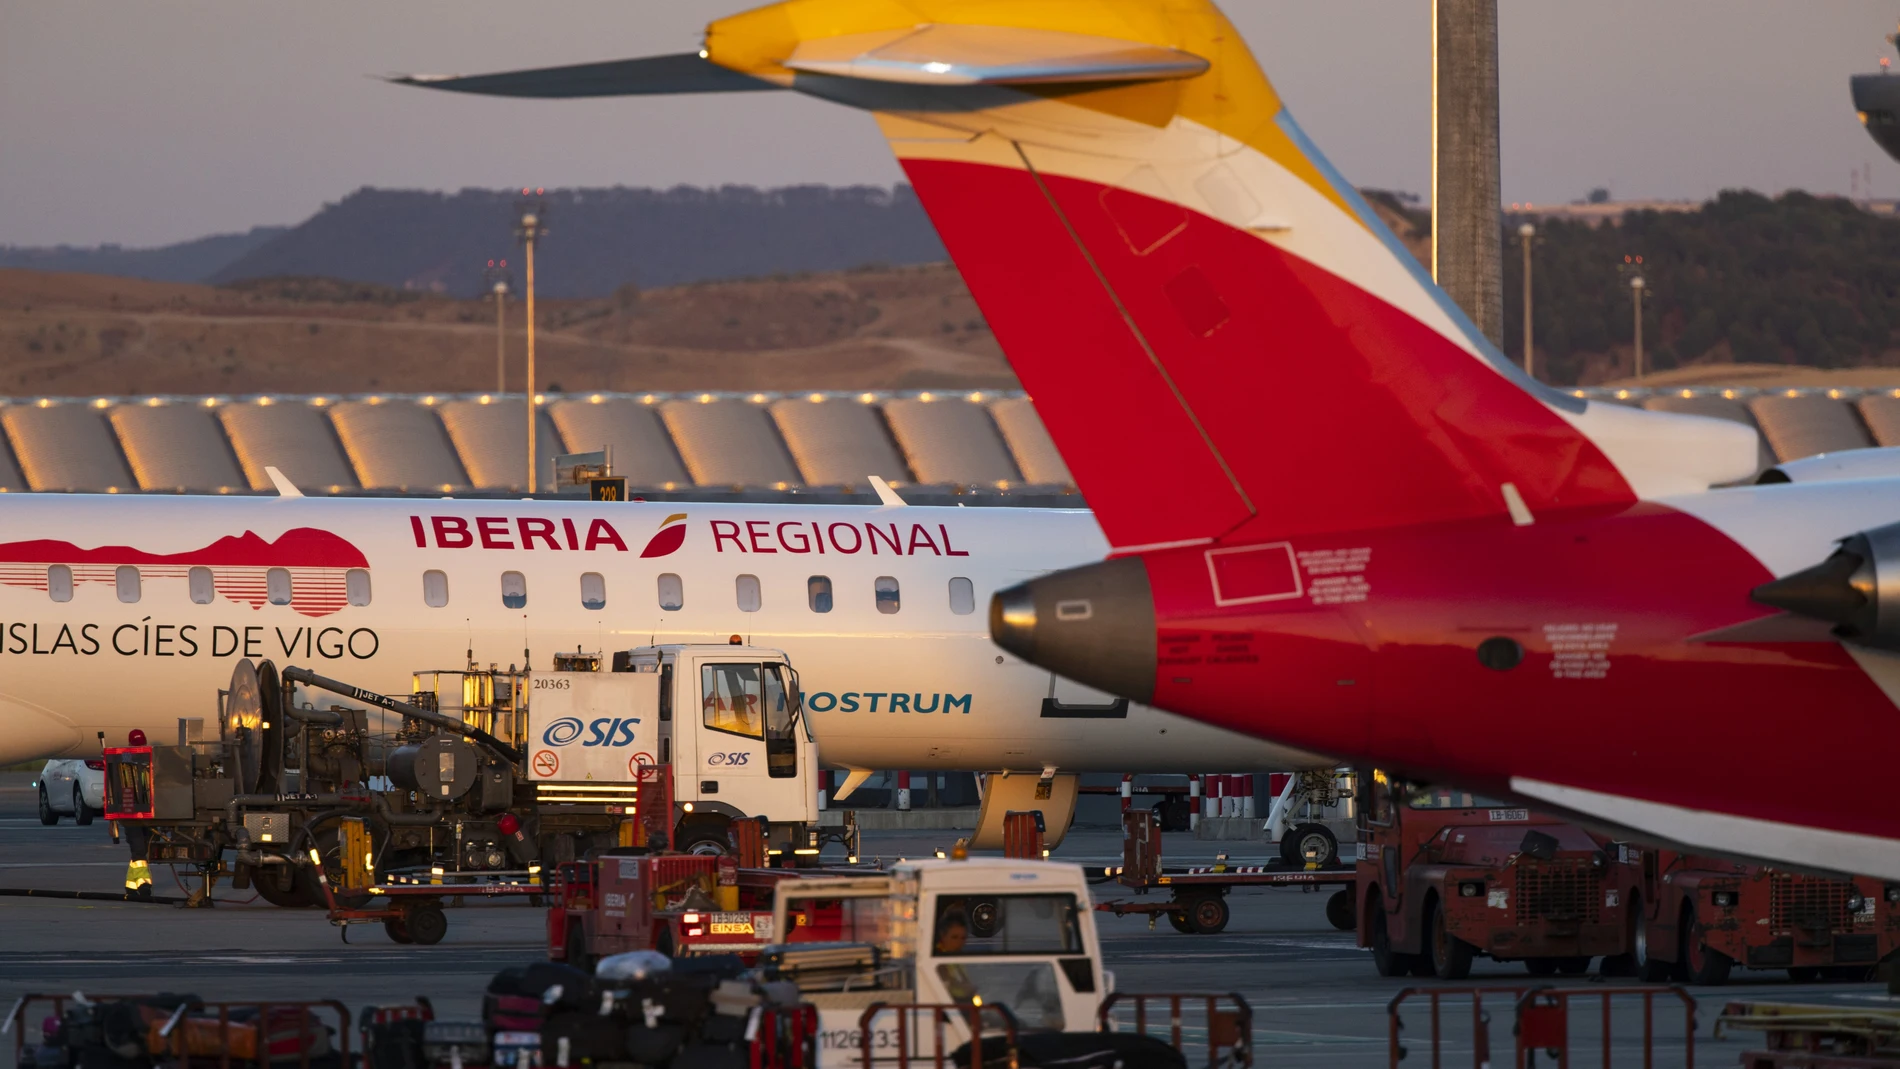 Aviones de Iberia en la Terminal T-4 del aeropuerto Adolfo Suarez Barajas.